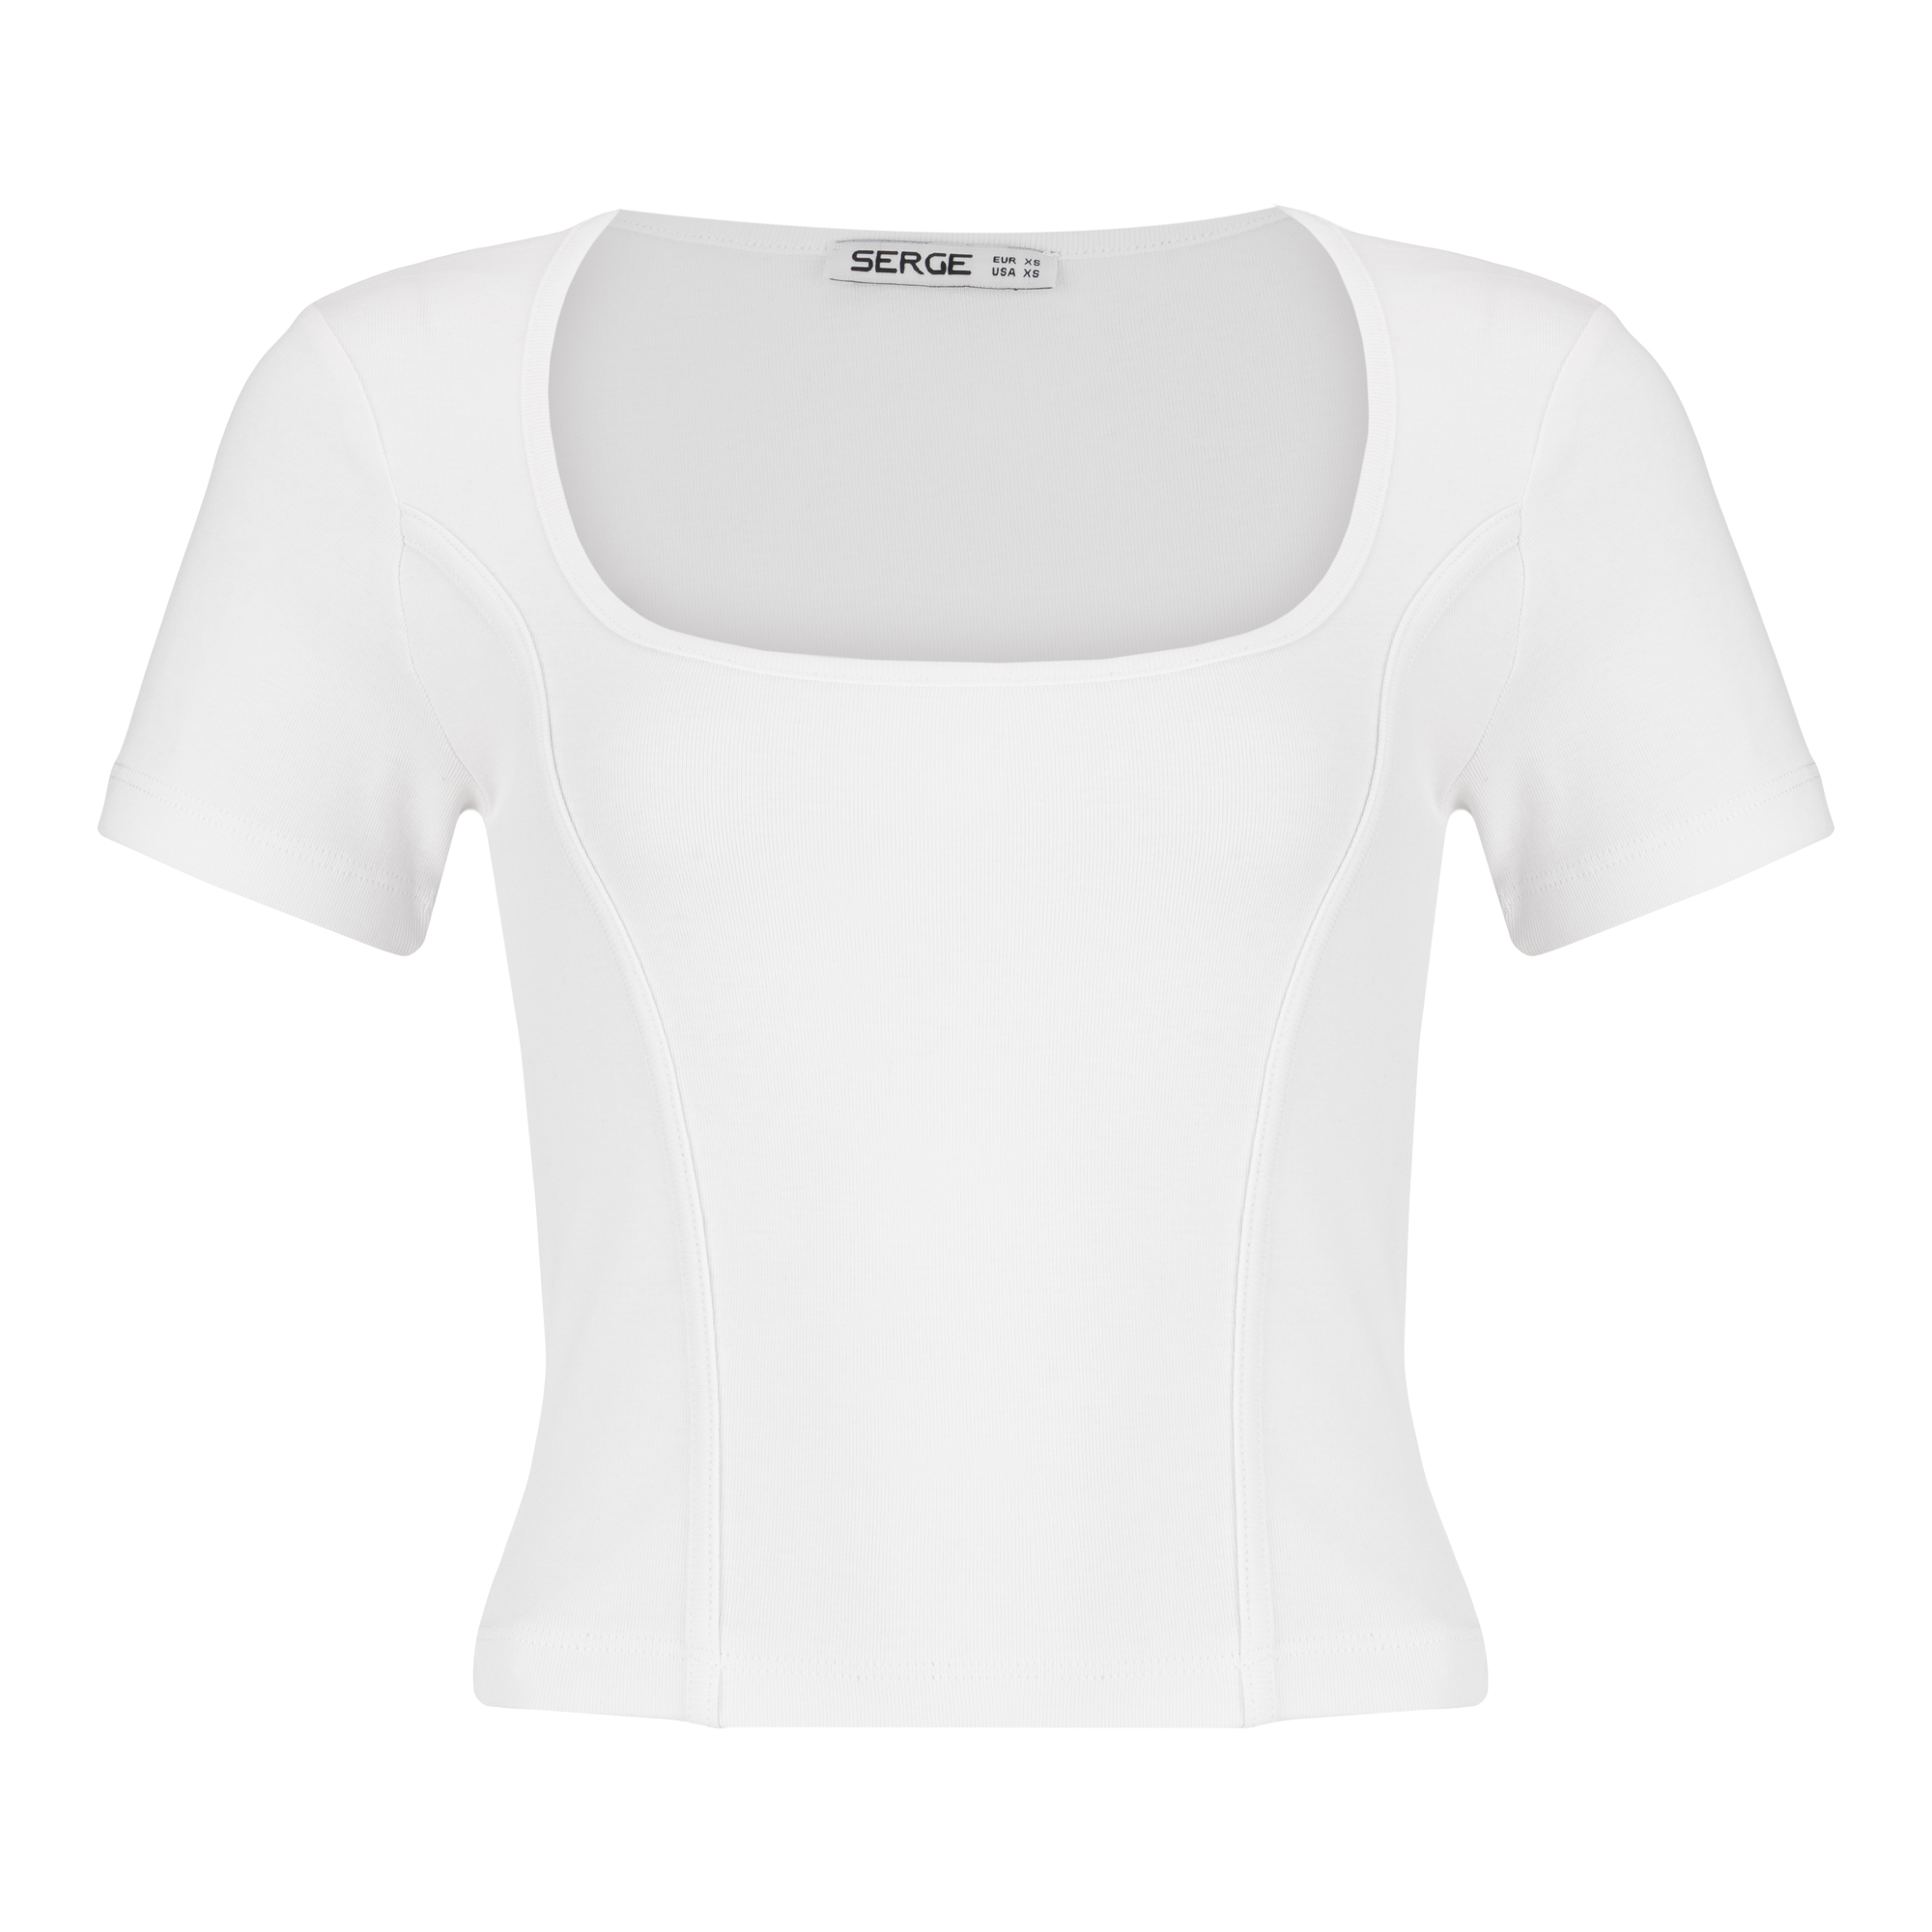 تی شرت آستین کوتاه زنانه سرژه مدل 203381 یقه خشتی رنگ سفید